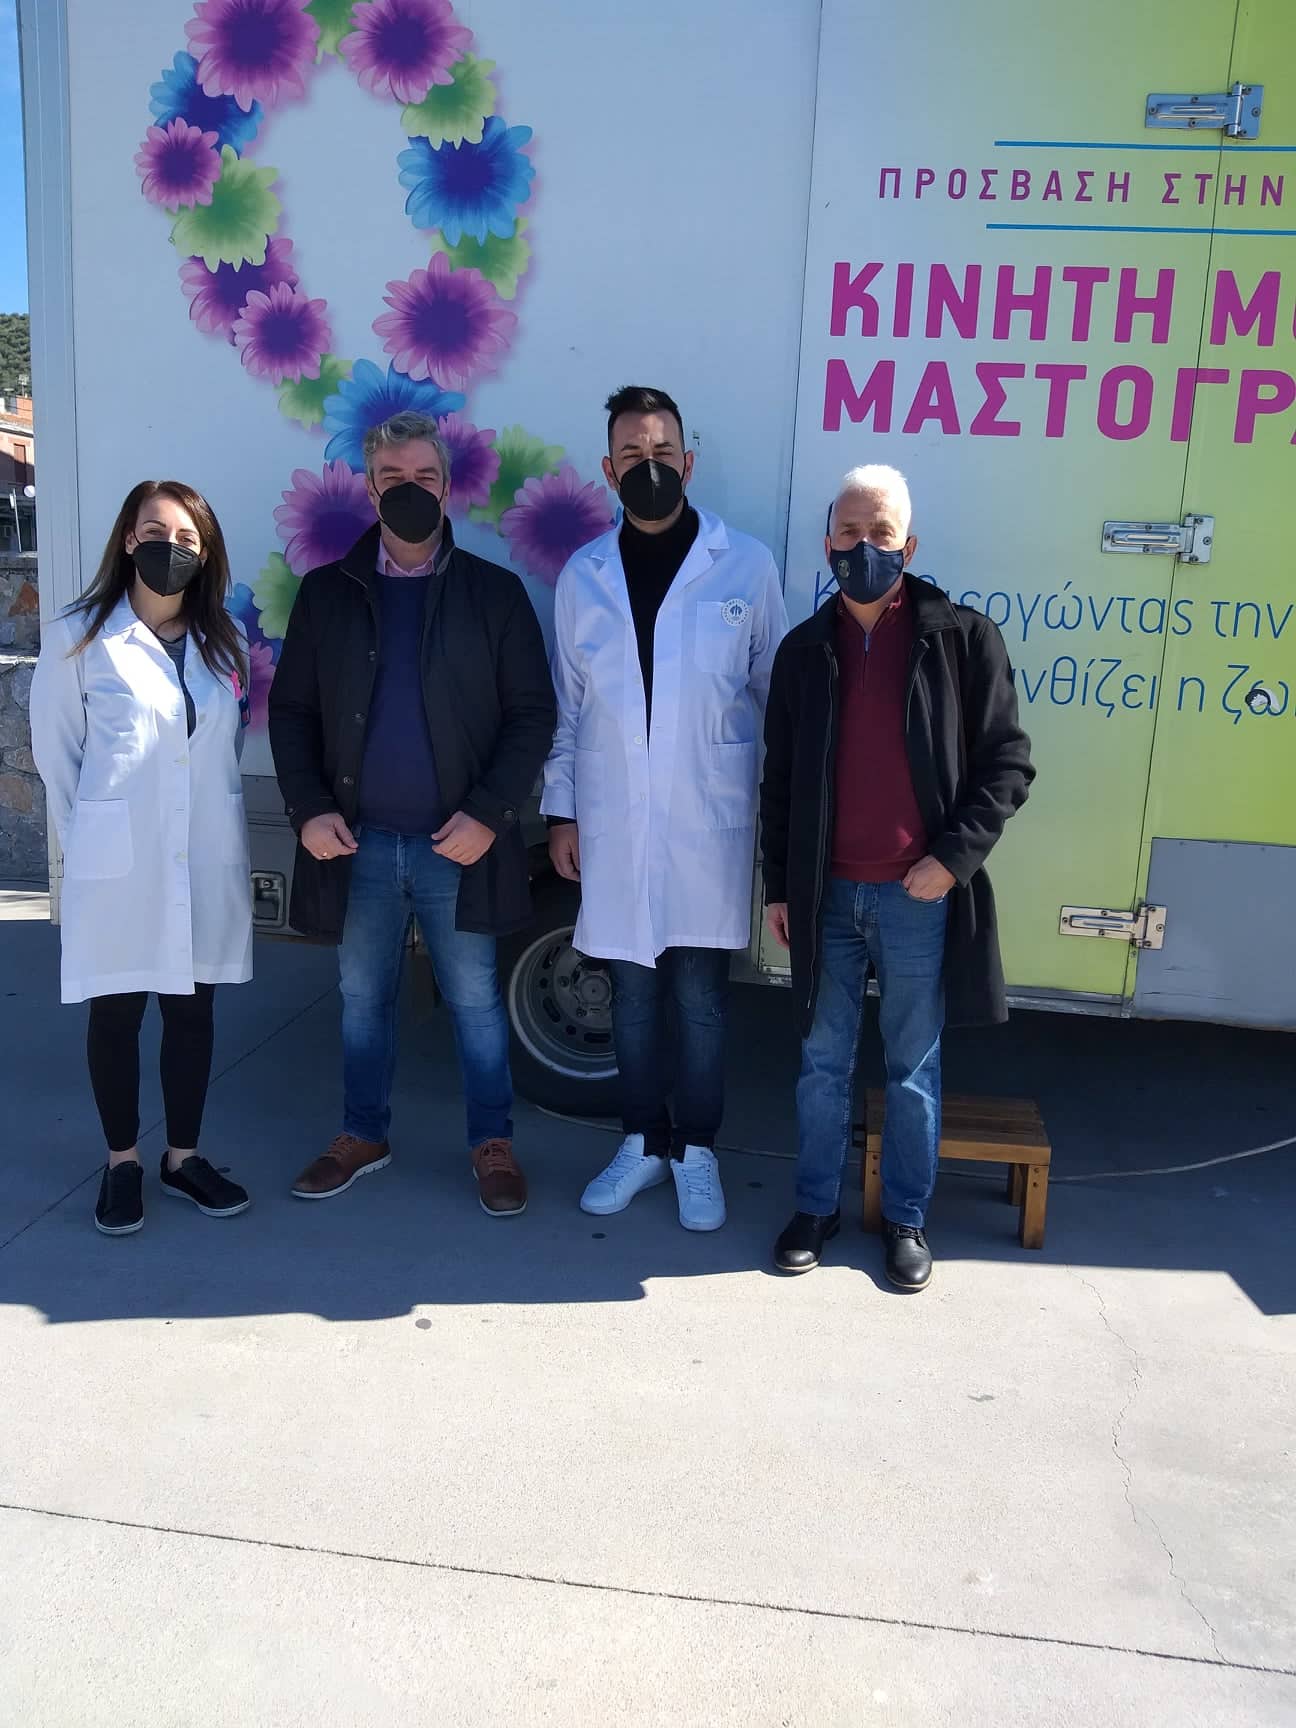 Επιμελητήριο Εύβοιας: Ξεκίνησαν οι δωρεάν μαστογραφίες από την κινητή μονάδα μαστογράφου της ΕΑΕ